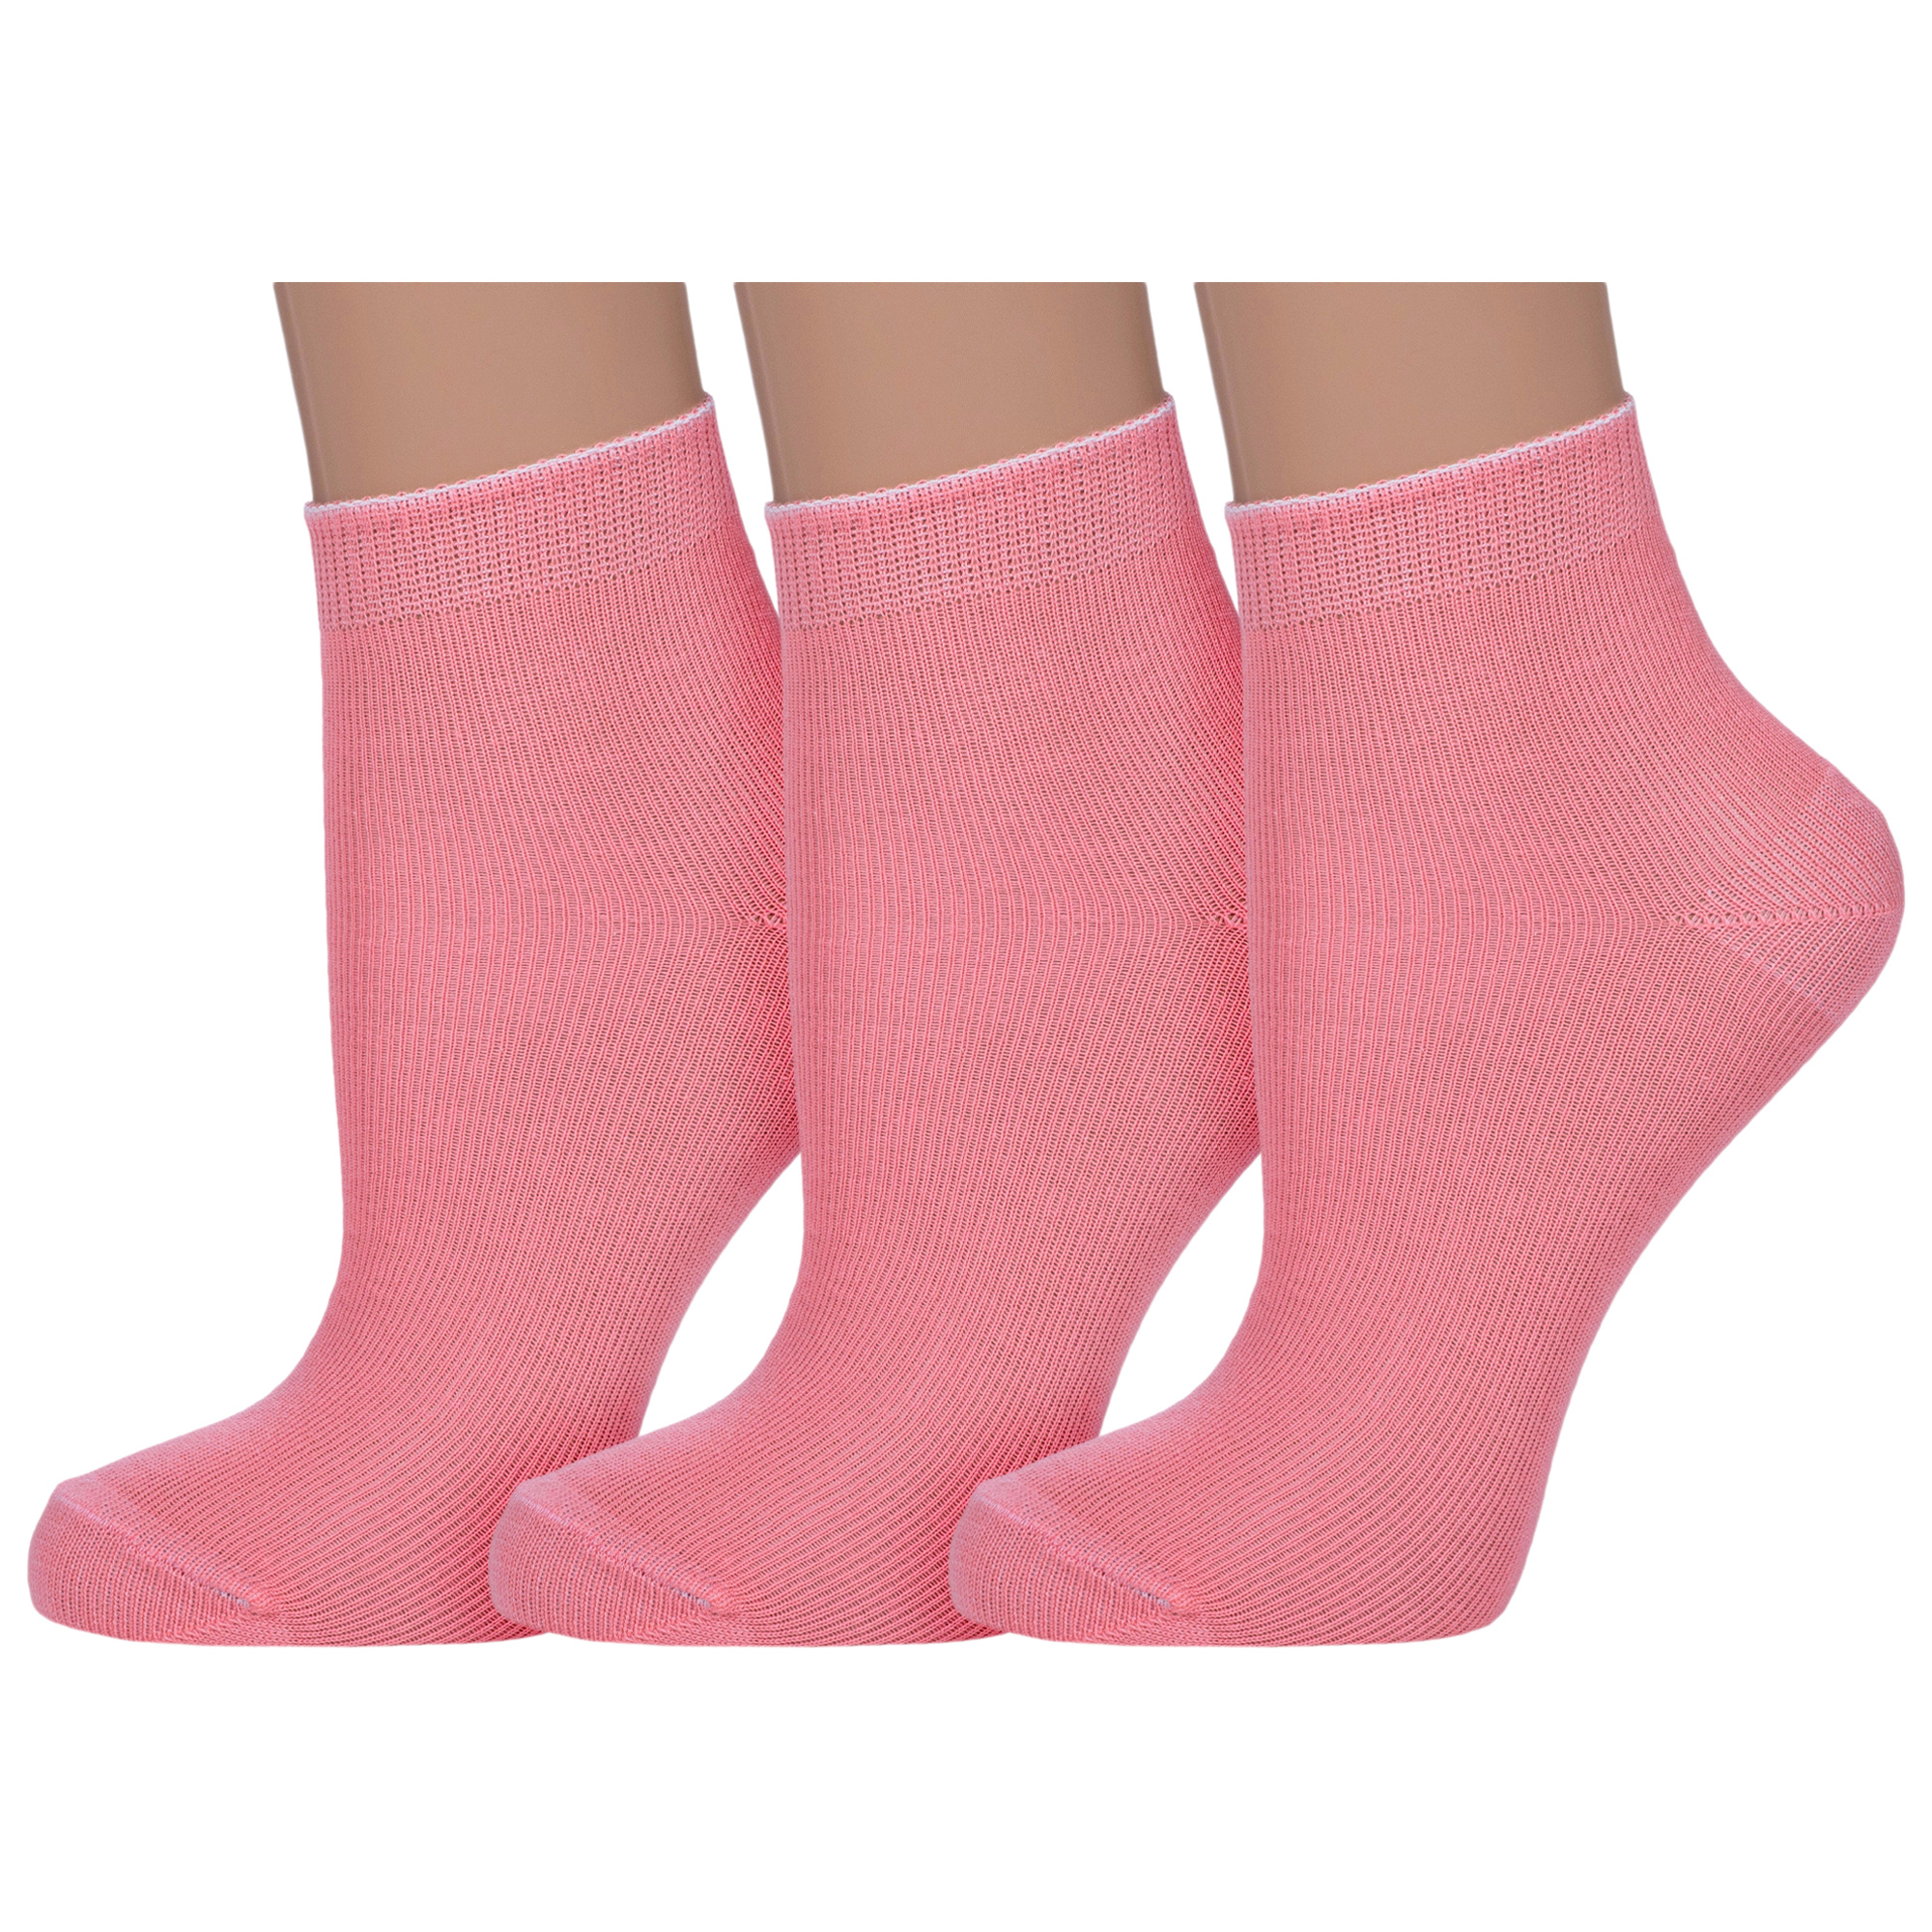 Носки детские НАШЕ 3-С115, розовый, 14-16 носки детские наше 3 с115 голубые 12 14